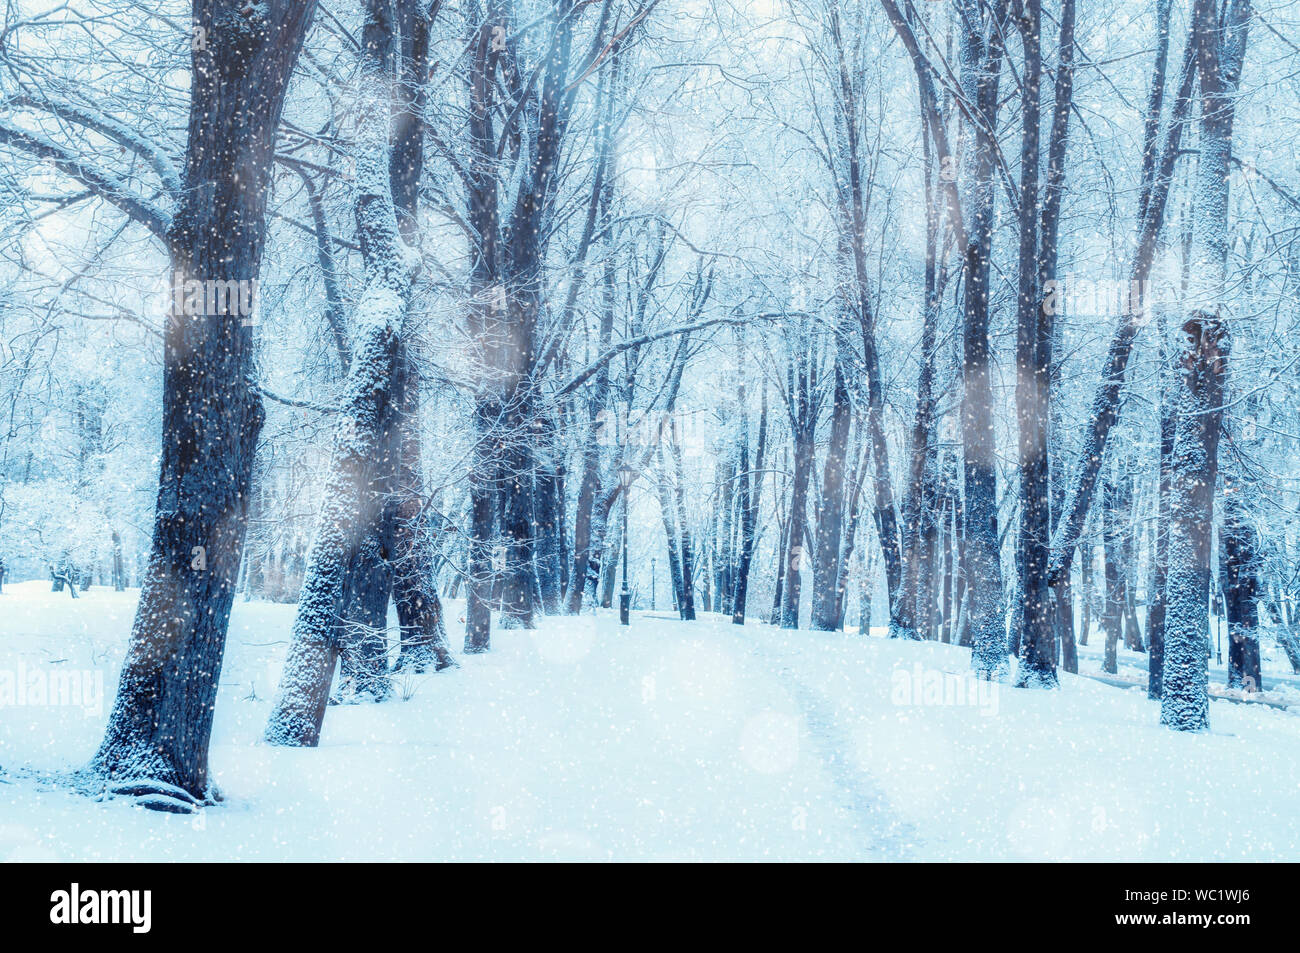 Paesaggio invernale, nevoso inverno alberi lungo il park alley - inverno nevoso scena con alberi sotto la nevicata nel giorno di inverno Foto Stock